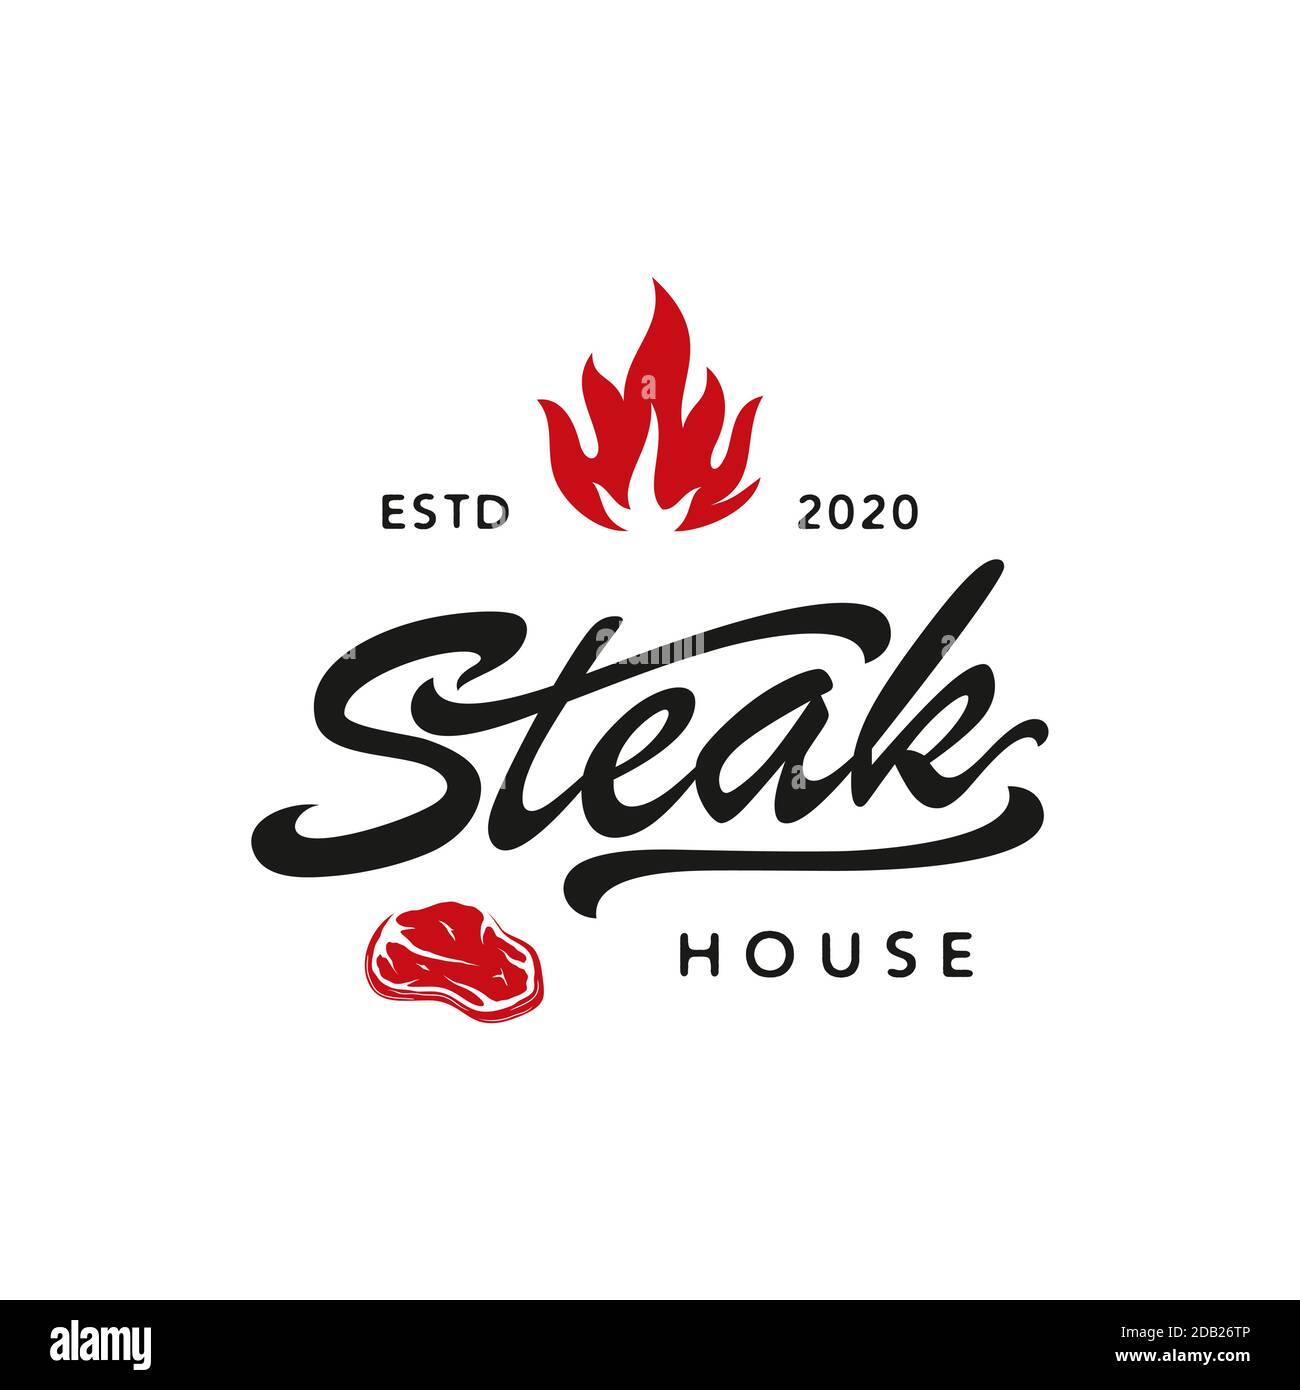 Steakhaus mit Feuerflamme und gekreuzten Cleavers im rustikalen Vintage-Grunge-Stil. Handgezeichnete gravierte Lagerfeuer- oder Brennskizze. Vektor-Logo-Design Stock Vektor